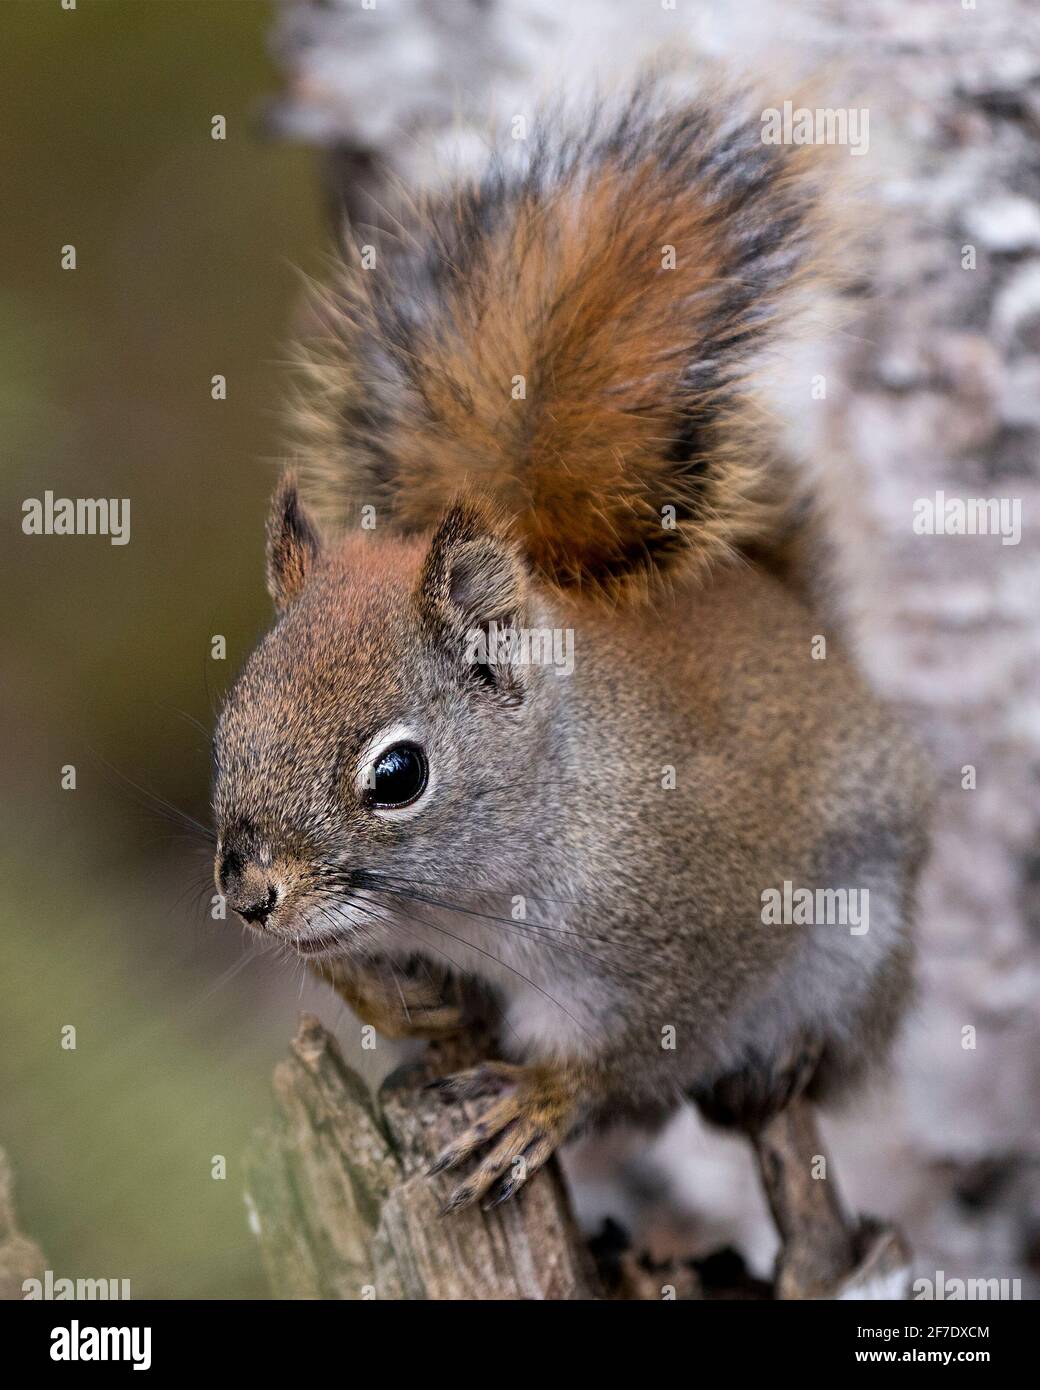 Eichhörnchen Kopf Nahaufnahme Vorderansicht sitzt auf einem Baumstumpf mit einem verschwommenen Hintergrund in seiner Umgebung und Lebensraum mit buschigen Schwanz, braunem Fell. Stockfoto